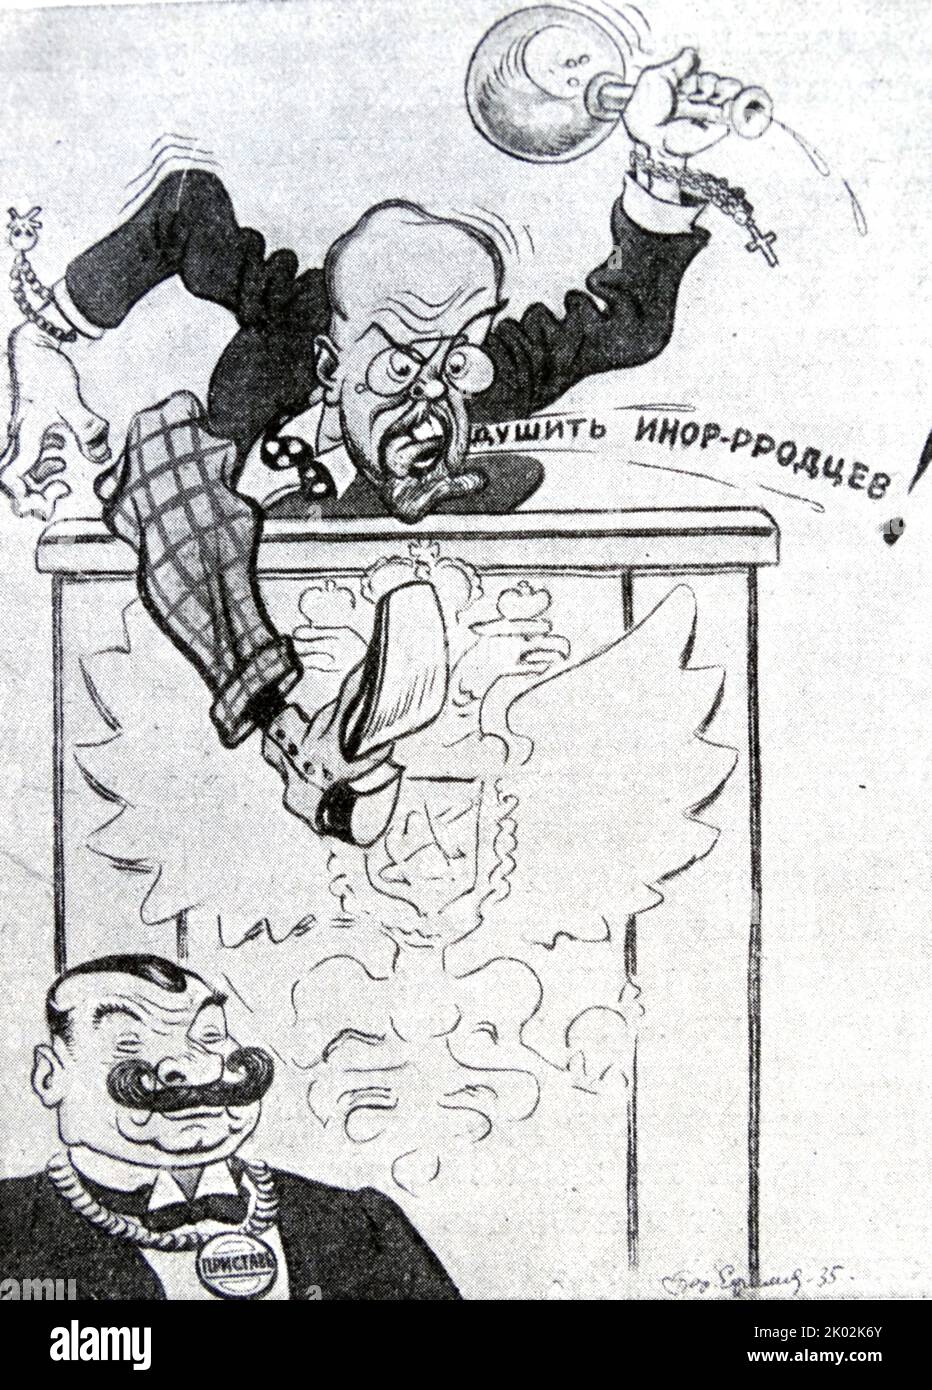 Purishkevich. Caricatura di Boris Efimov. Vladimir Mitrofanovich Purishkevich (1870 – 1920) è stato un politico di destra nella Russia imperiale, noto per le sue visioni monarchiche, ultra nazionaliste, antisemitiche e anticomuniste. Alla fine del 1916 partecipò all'uccisione di Grigori Rasputin. Foto Stock